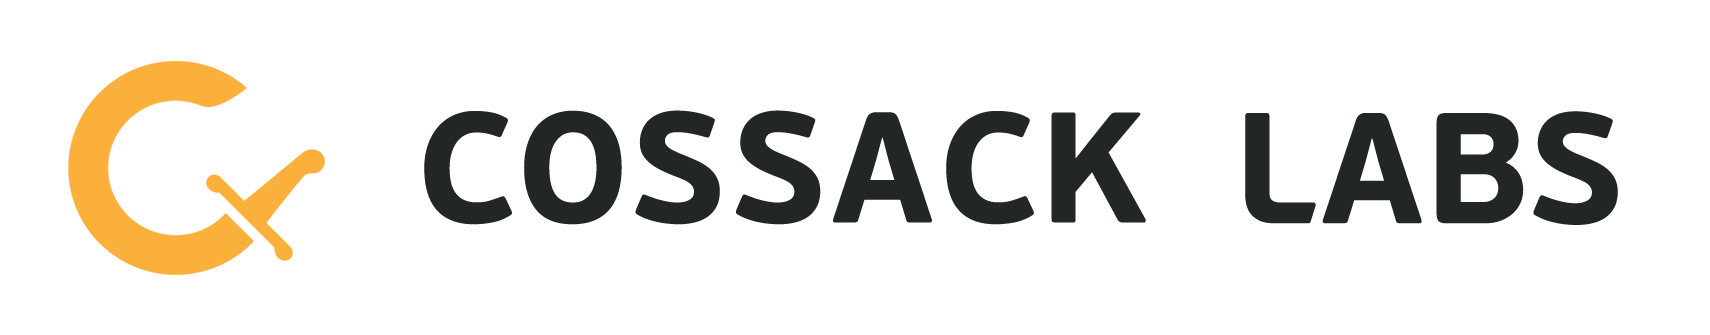 Cossack Labs logo, …